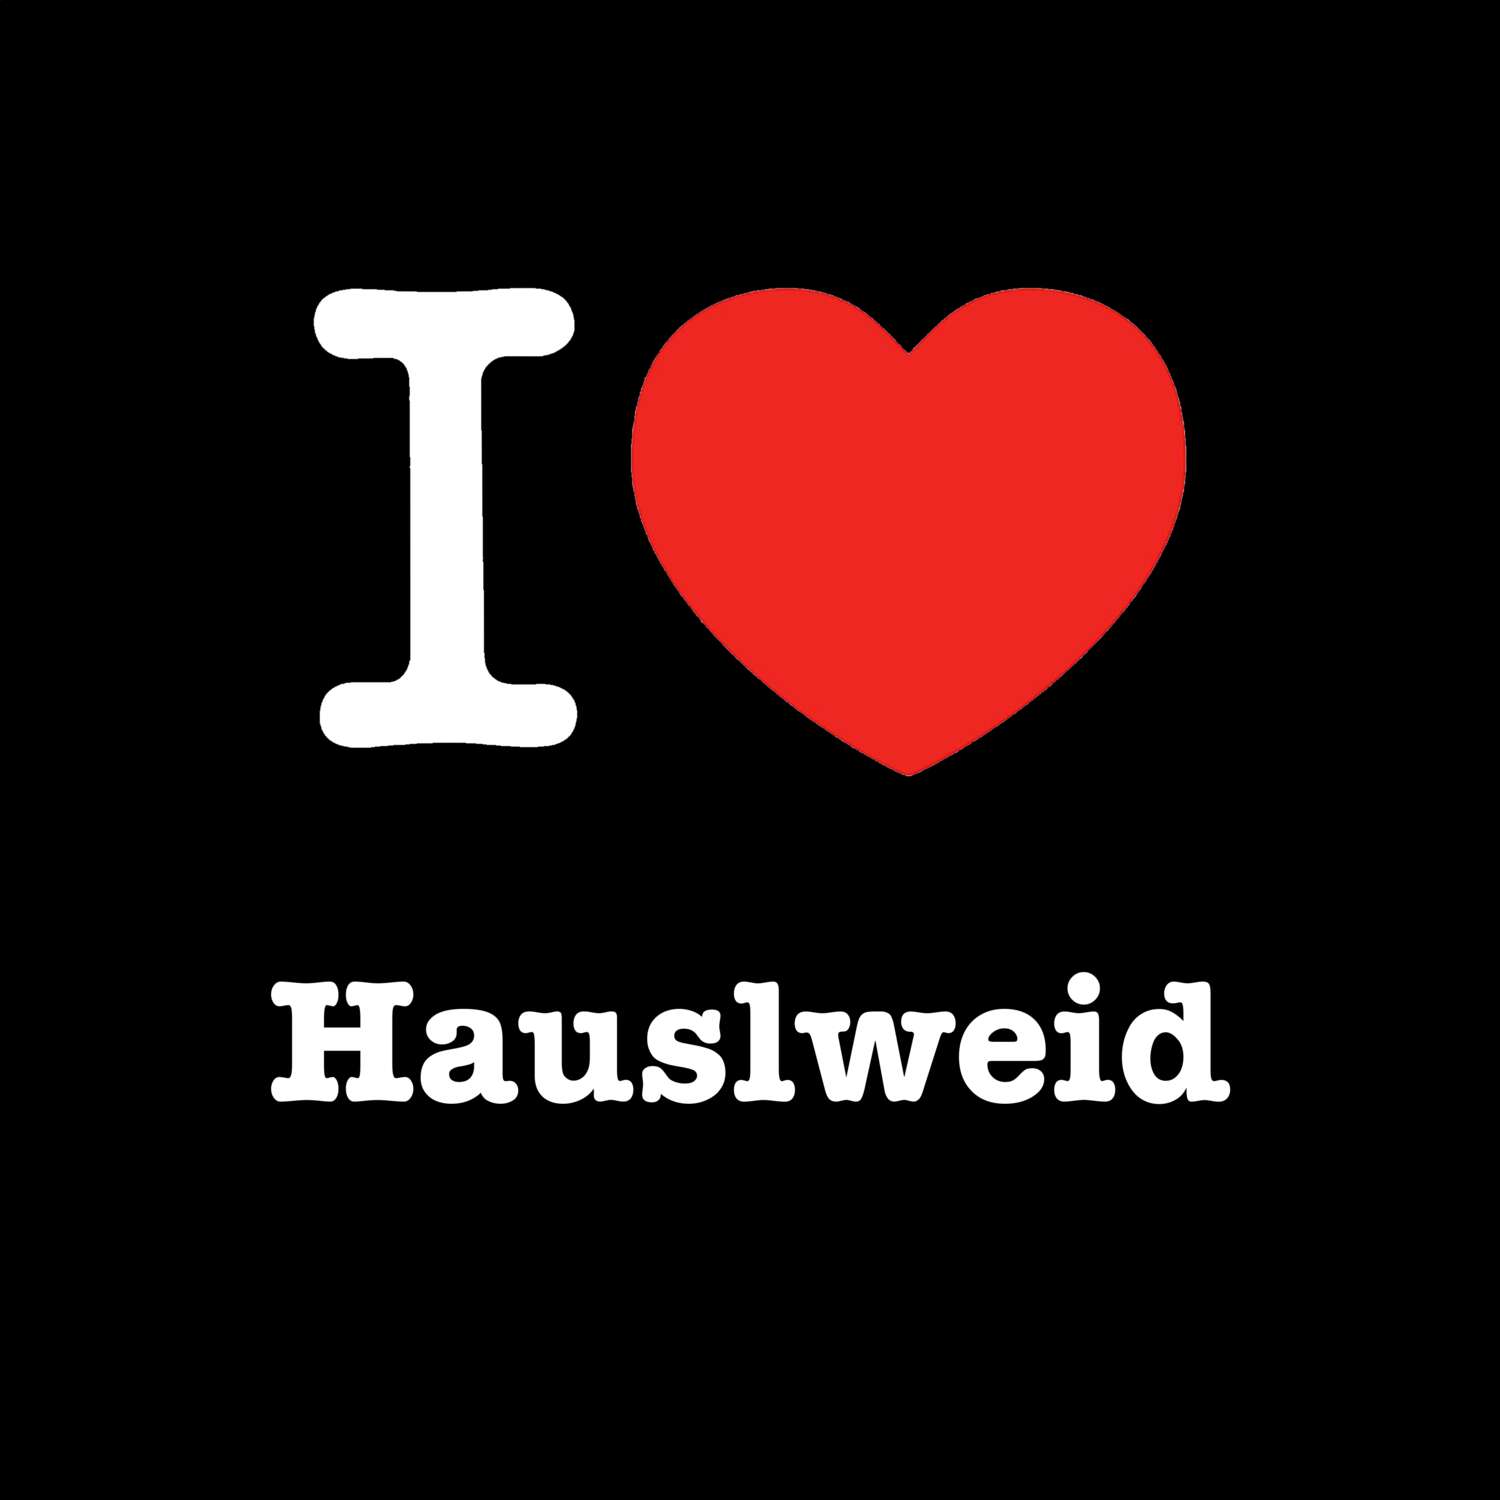 Hauslweid T-Shirt »I love«